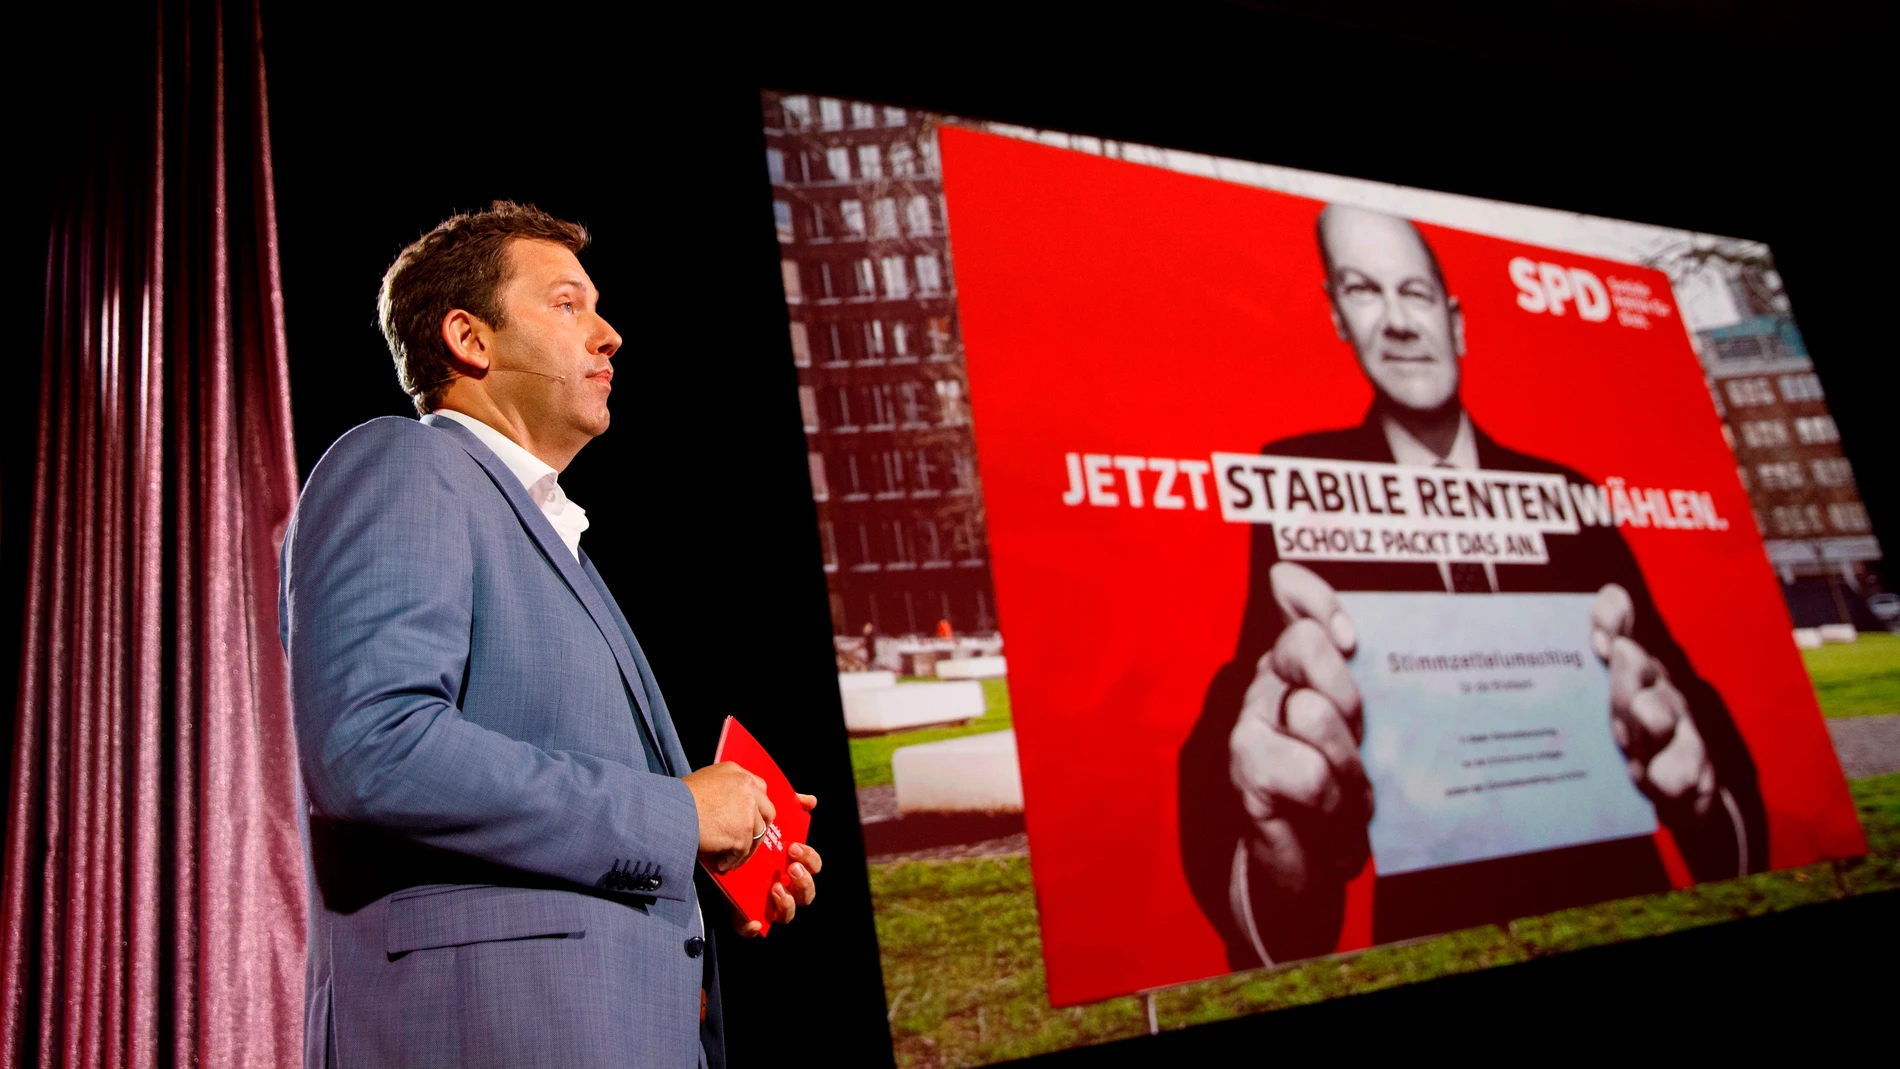 Lars Klingbeil, secretario general del SPD, presentó este miércoles el cartel de campaña de los socialdemócratas alemanes